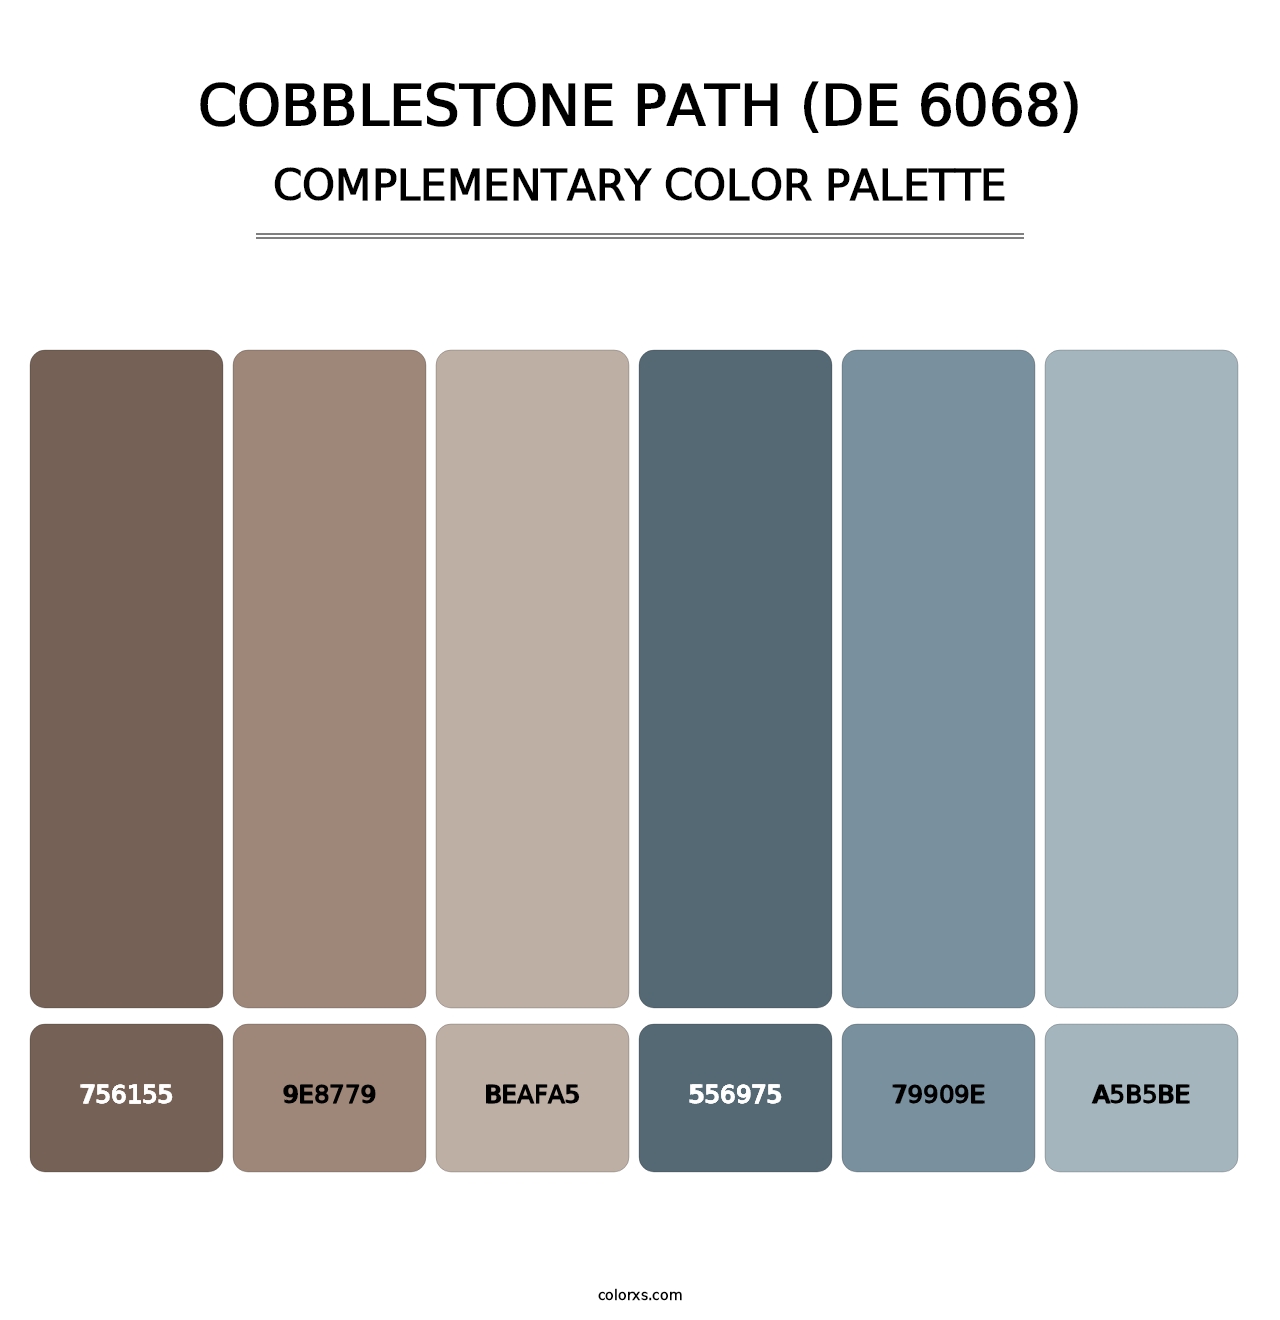 Cobblestone Path (DE 6068) - Complementary Color Palette